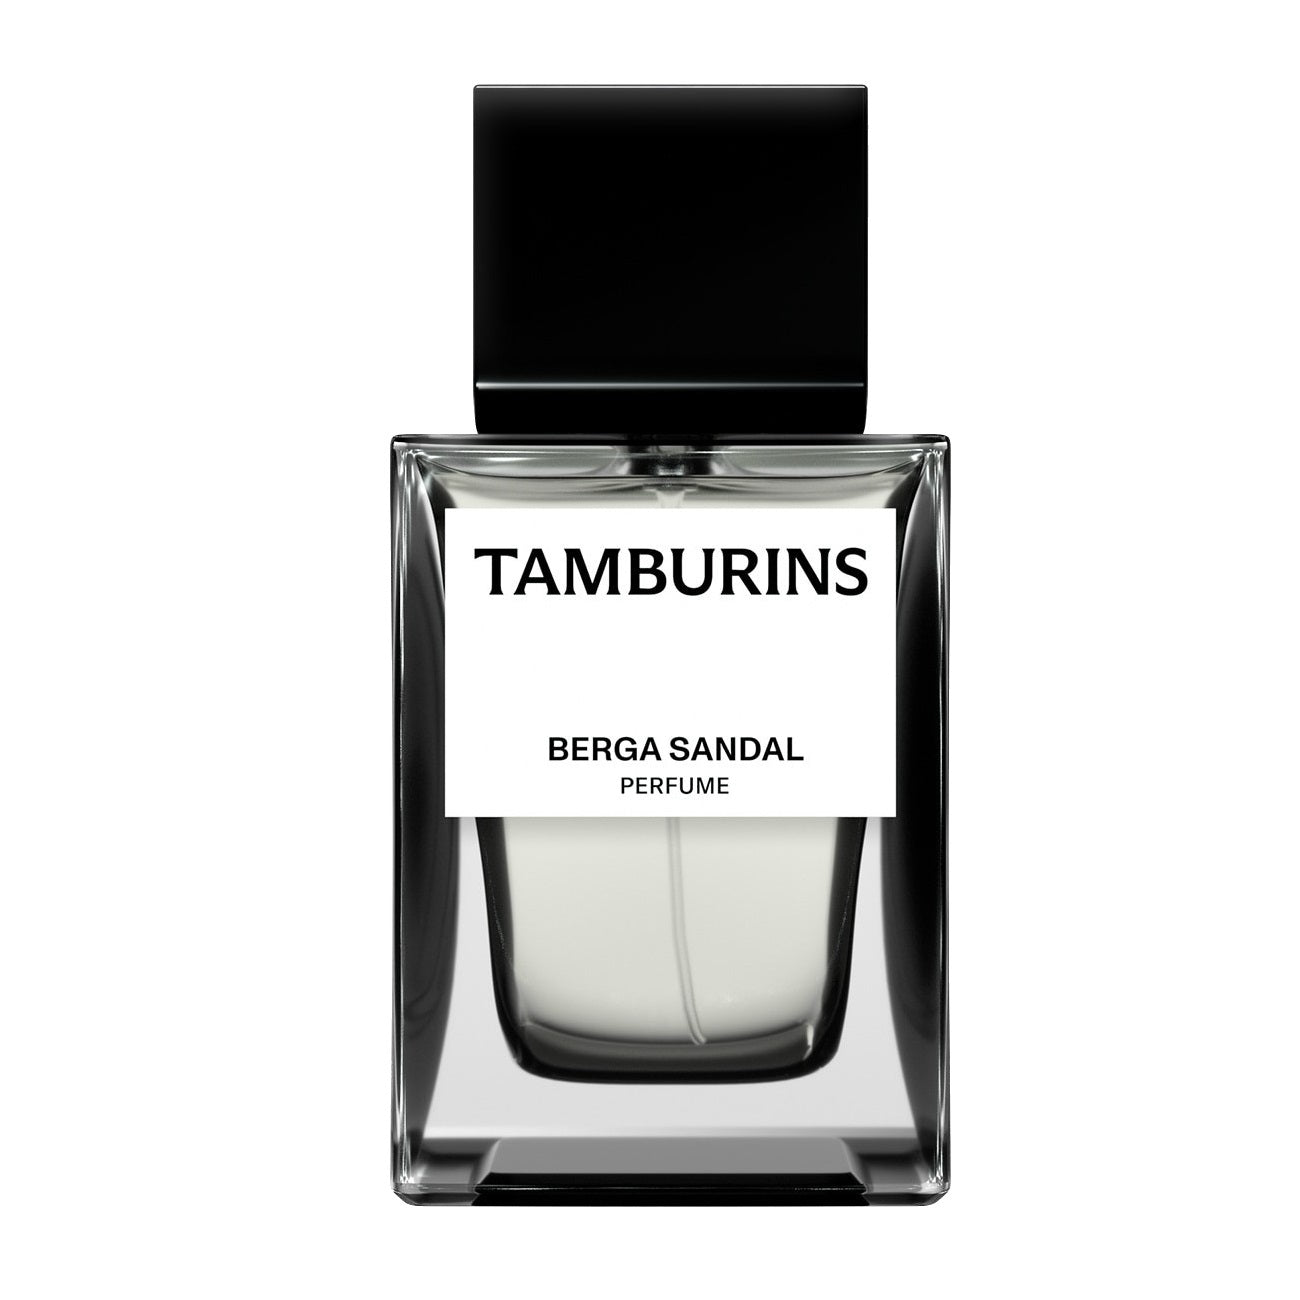 TAMBURINS BILINGUAL PERFUME 50ml-